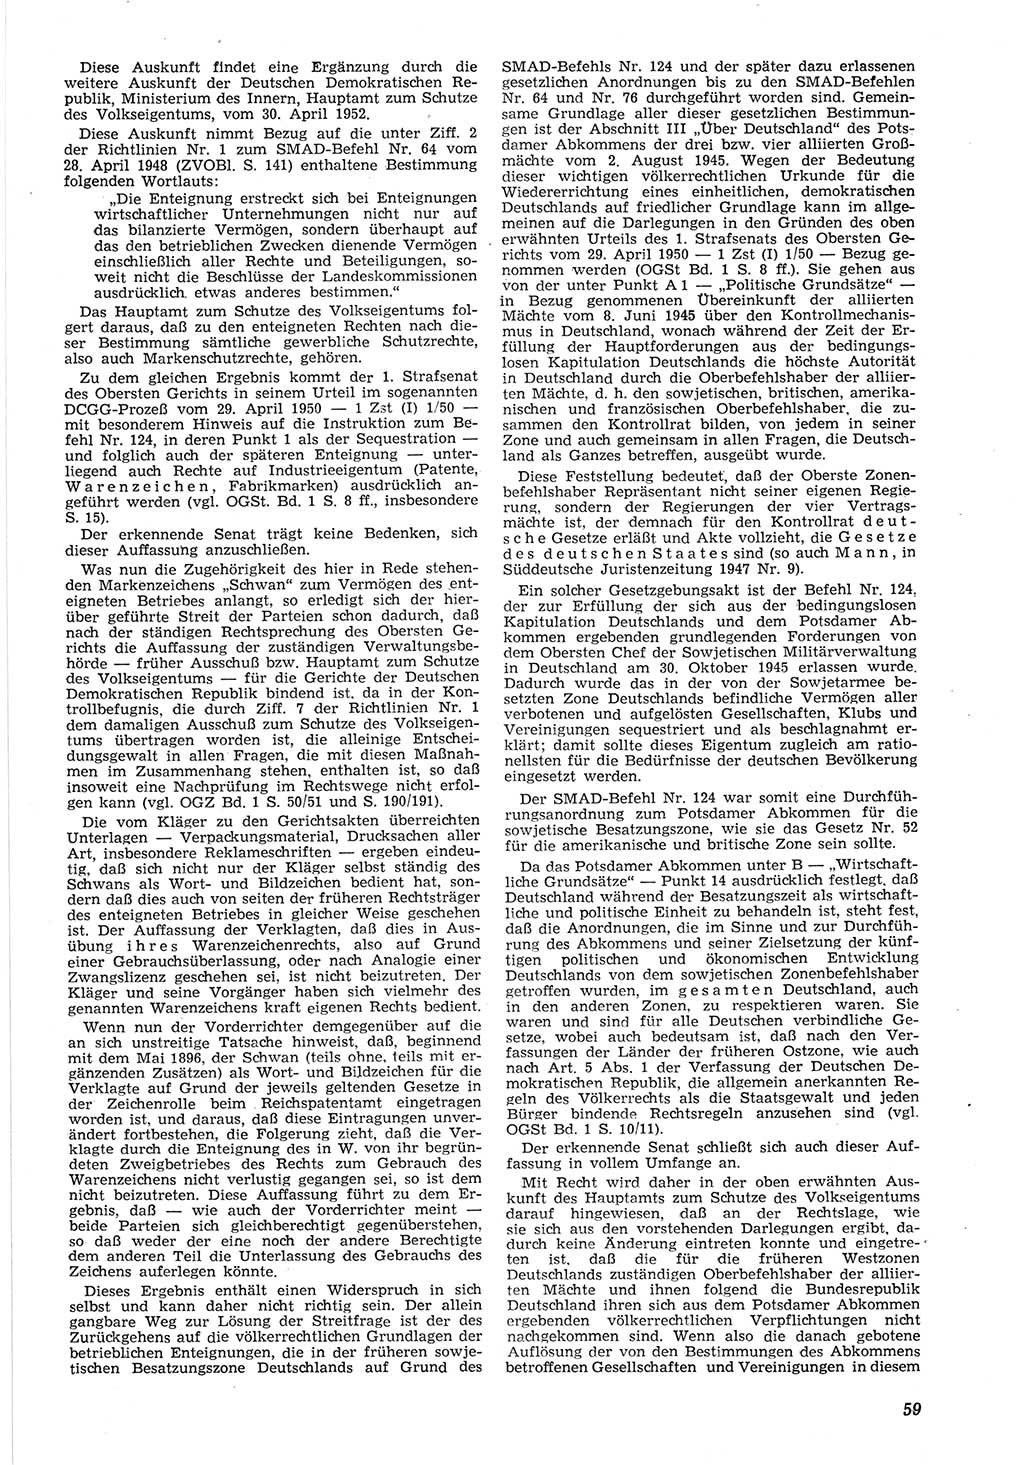 Neue Justiz (NJ), Zeitschrift für Recht und Rechtswissenschaft [Deutsche Demokratische Republik (DDR)], 8. Jahrgang 1954, Seite 59 (NJ DDR 1954, S. 59)